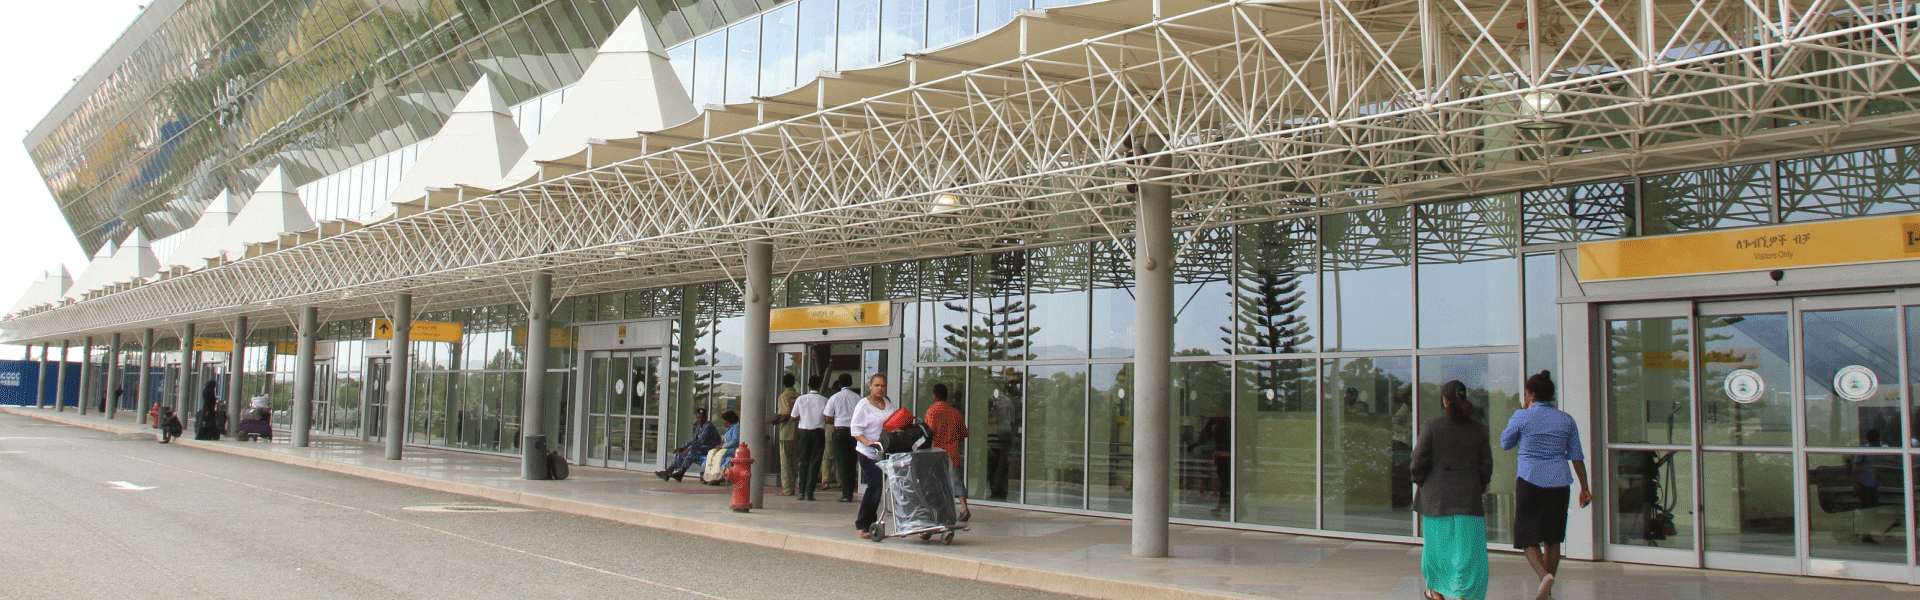 Ethiopian-Airlines Headquarter address